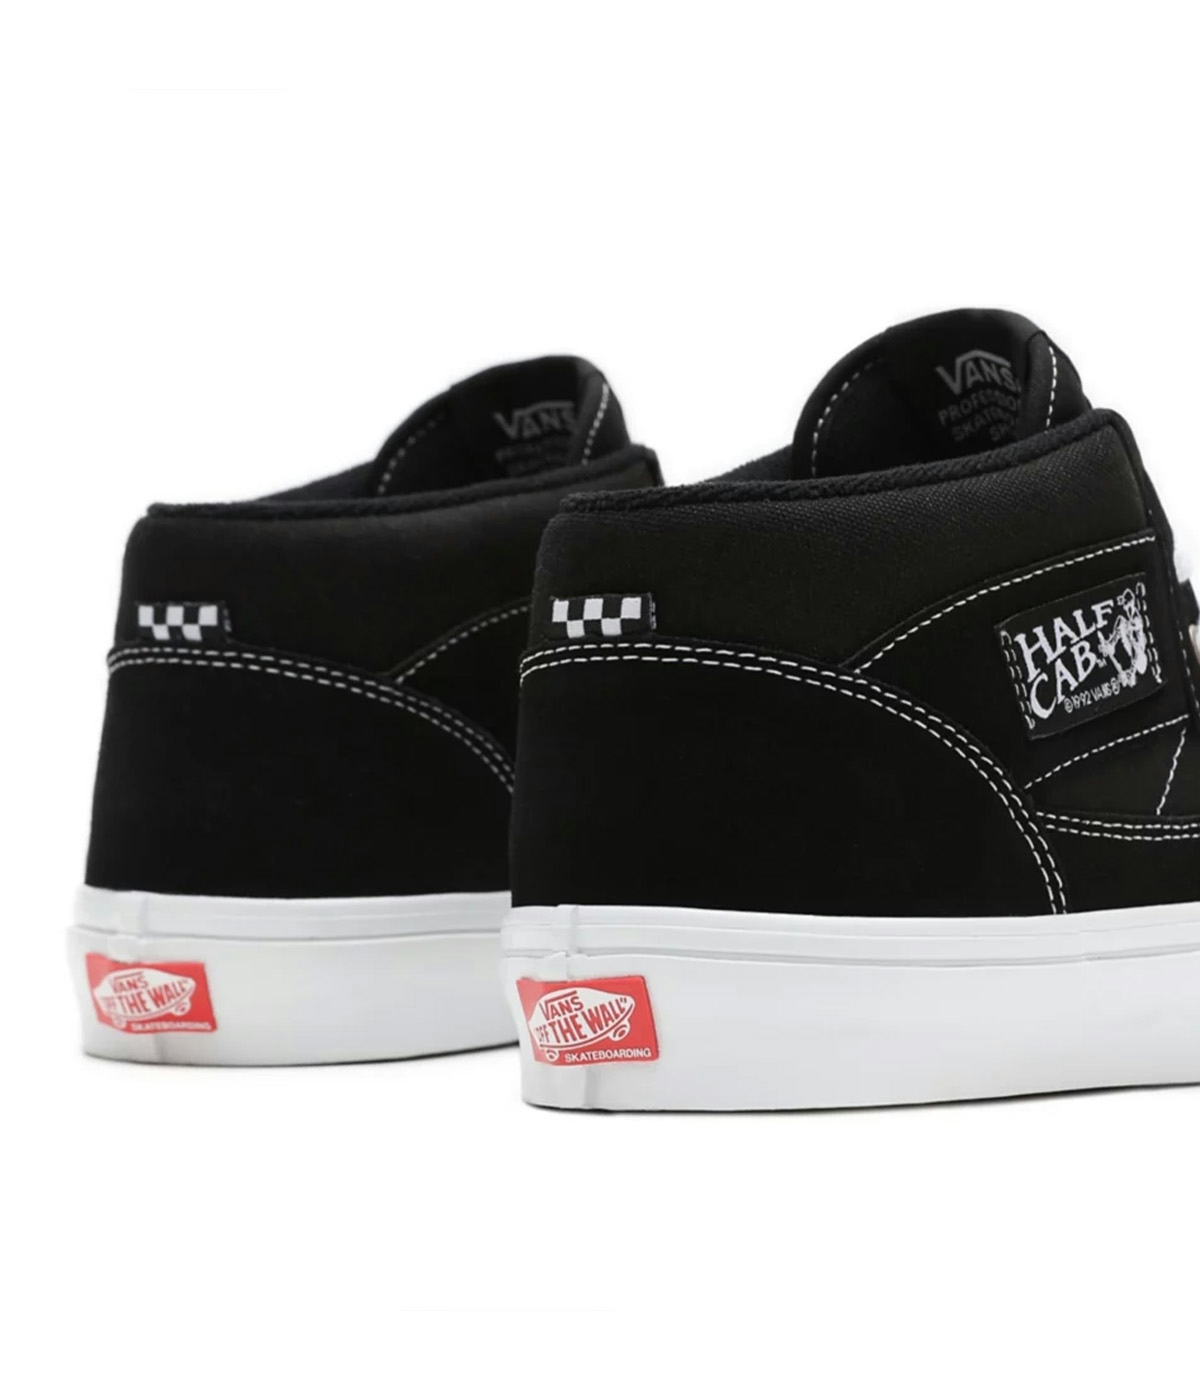 Vans Skate Half Cab Shoes - Skor Black/White 5